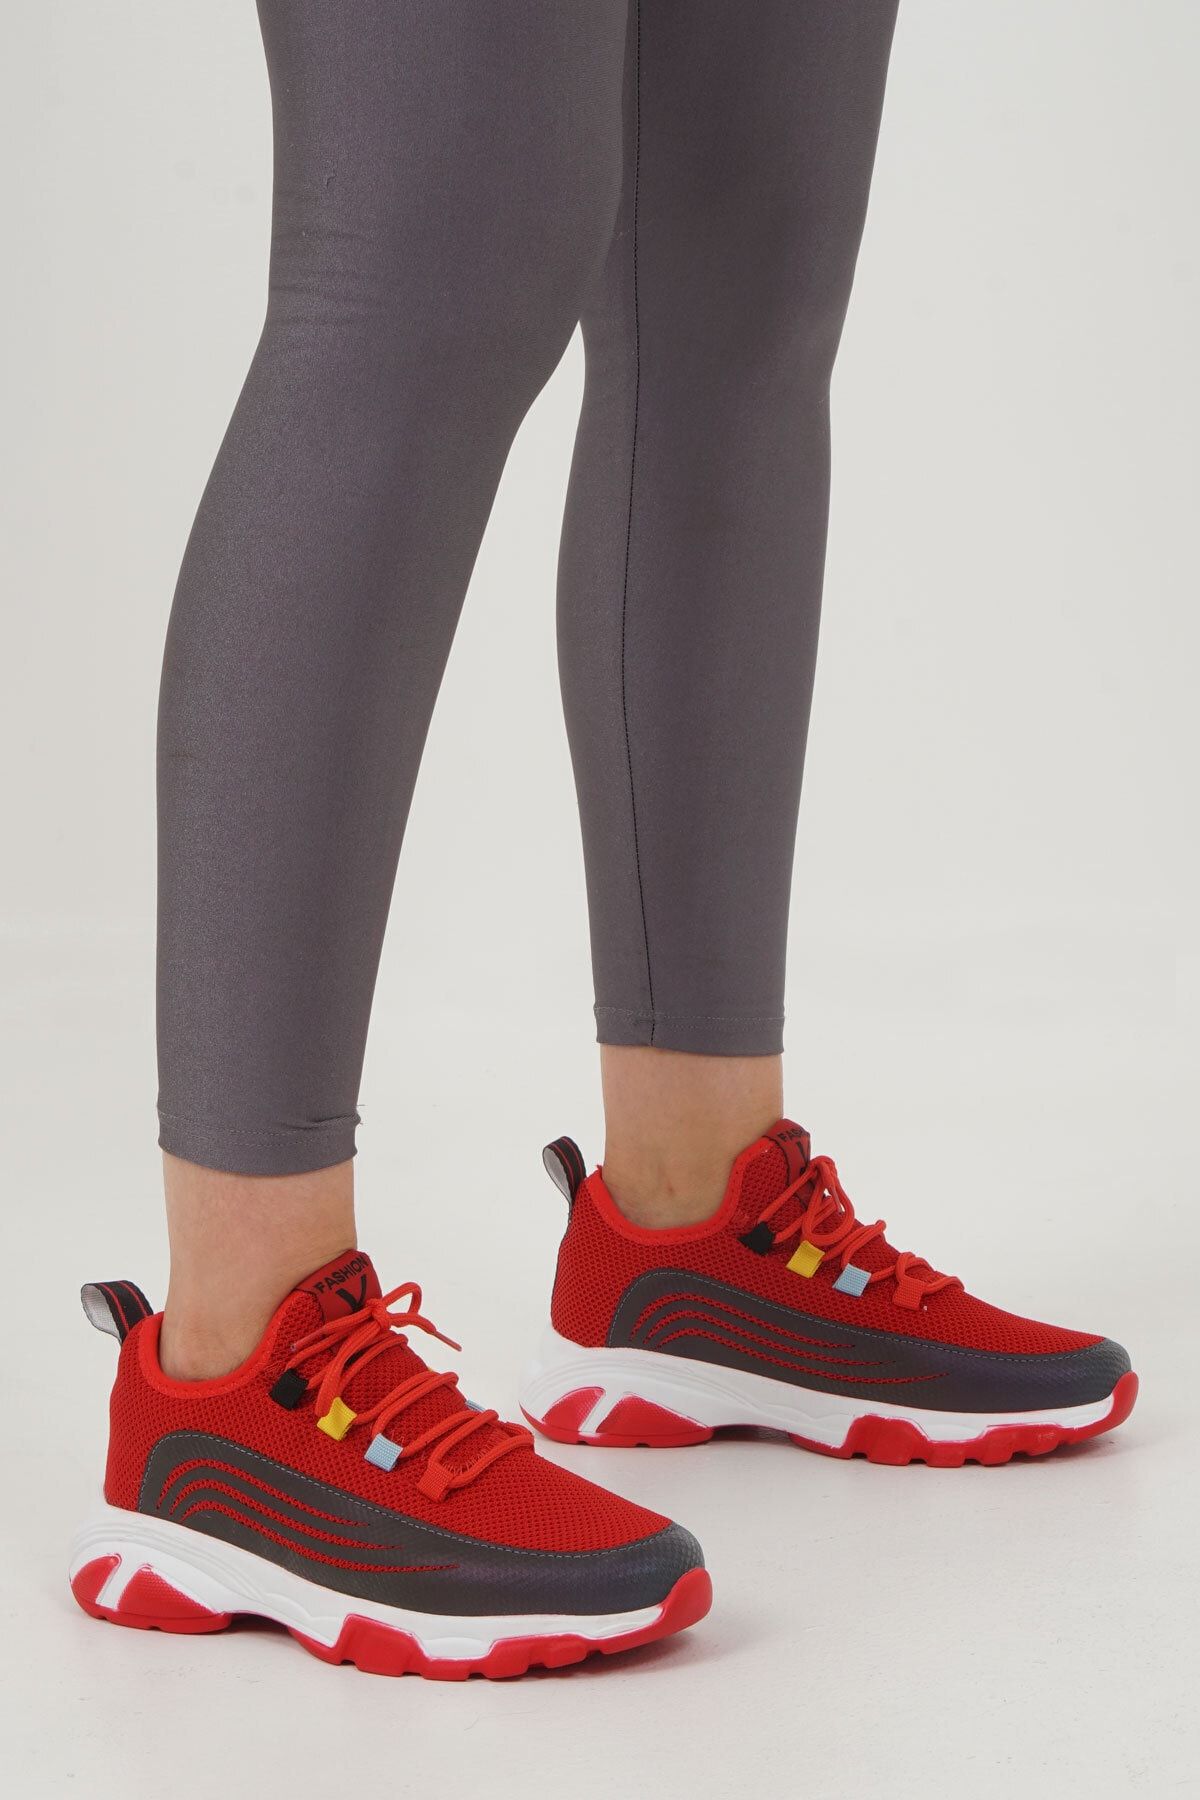 Marjin Kadın Sneaker Dolgu Topuk Spor Ayakkabı Cevas kırmızı